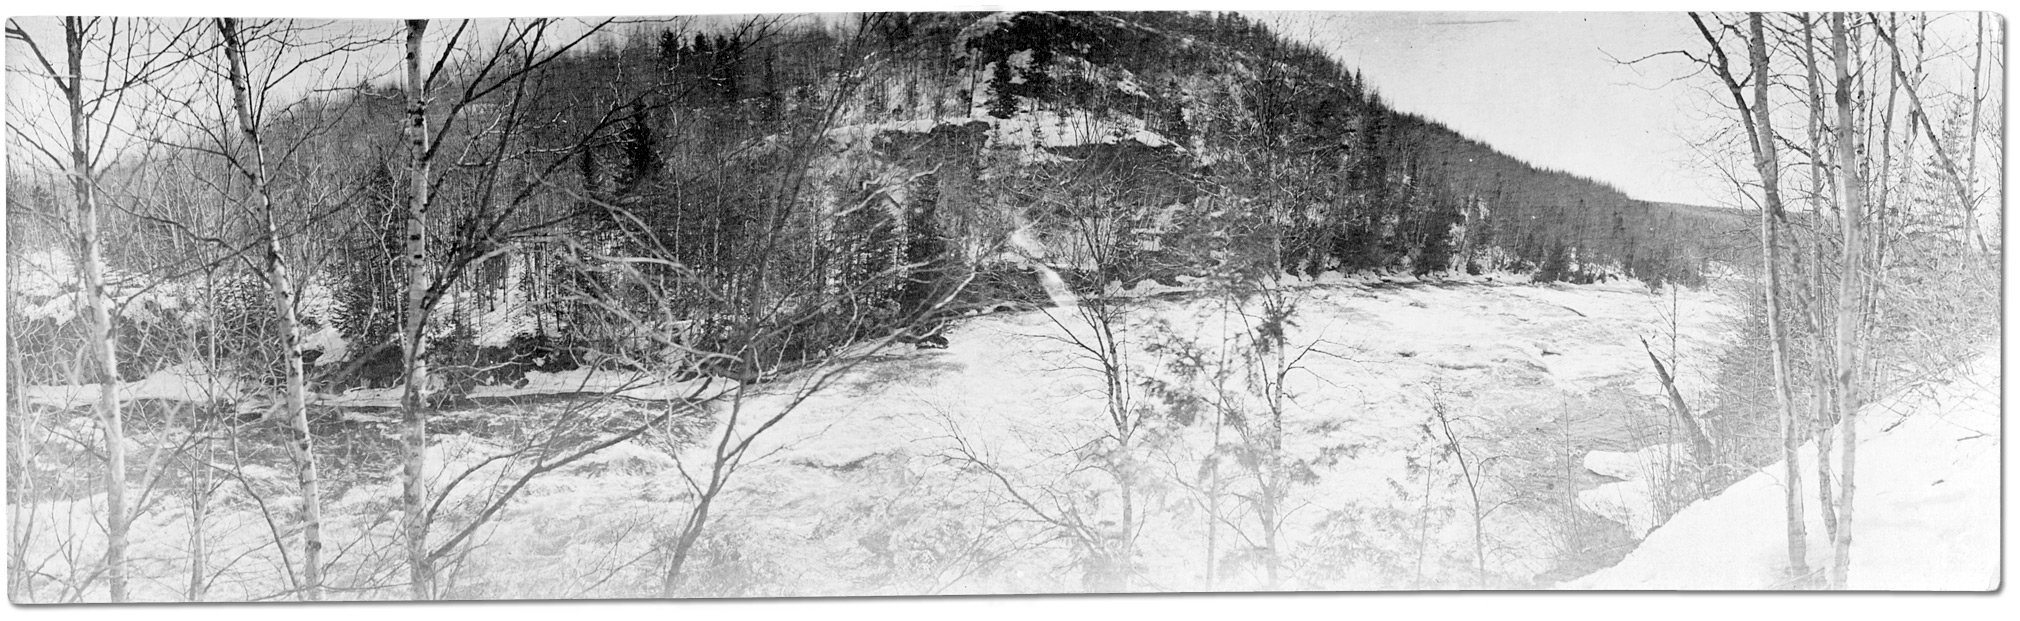 Photographie : Rivière au pied d'une colline [vers 1915]